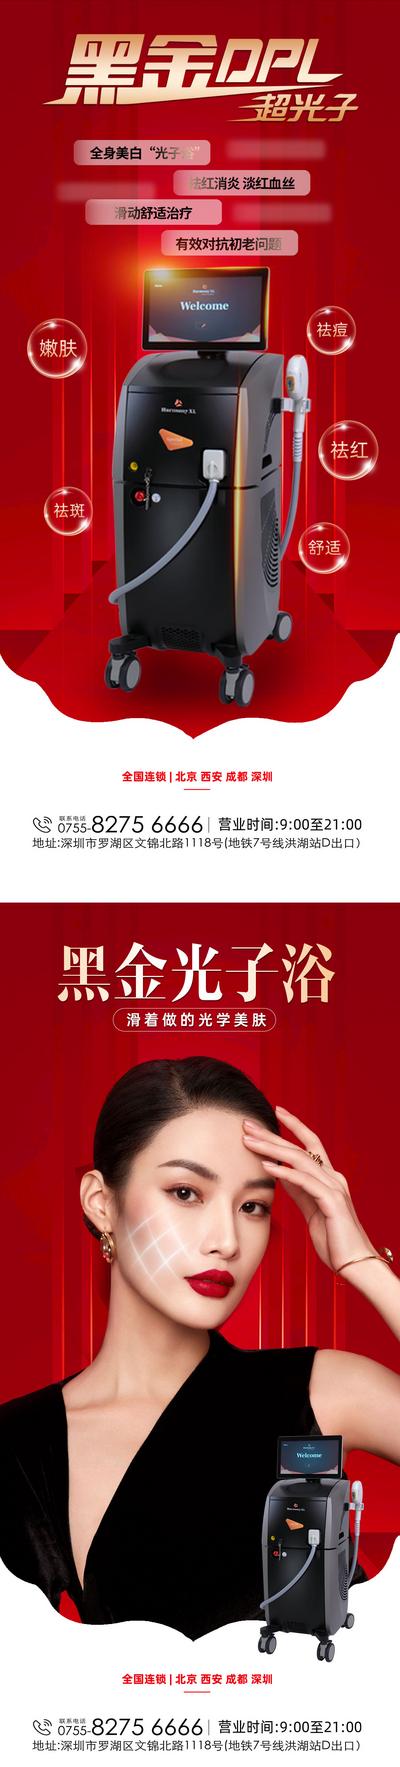 【南门网】广告 海报 医美 超光子 仪器 设备 系列